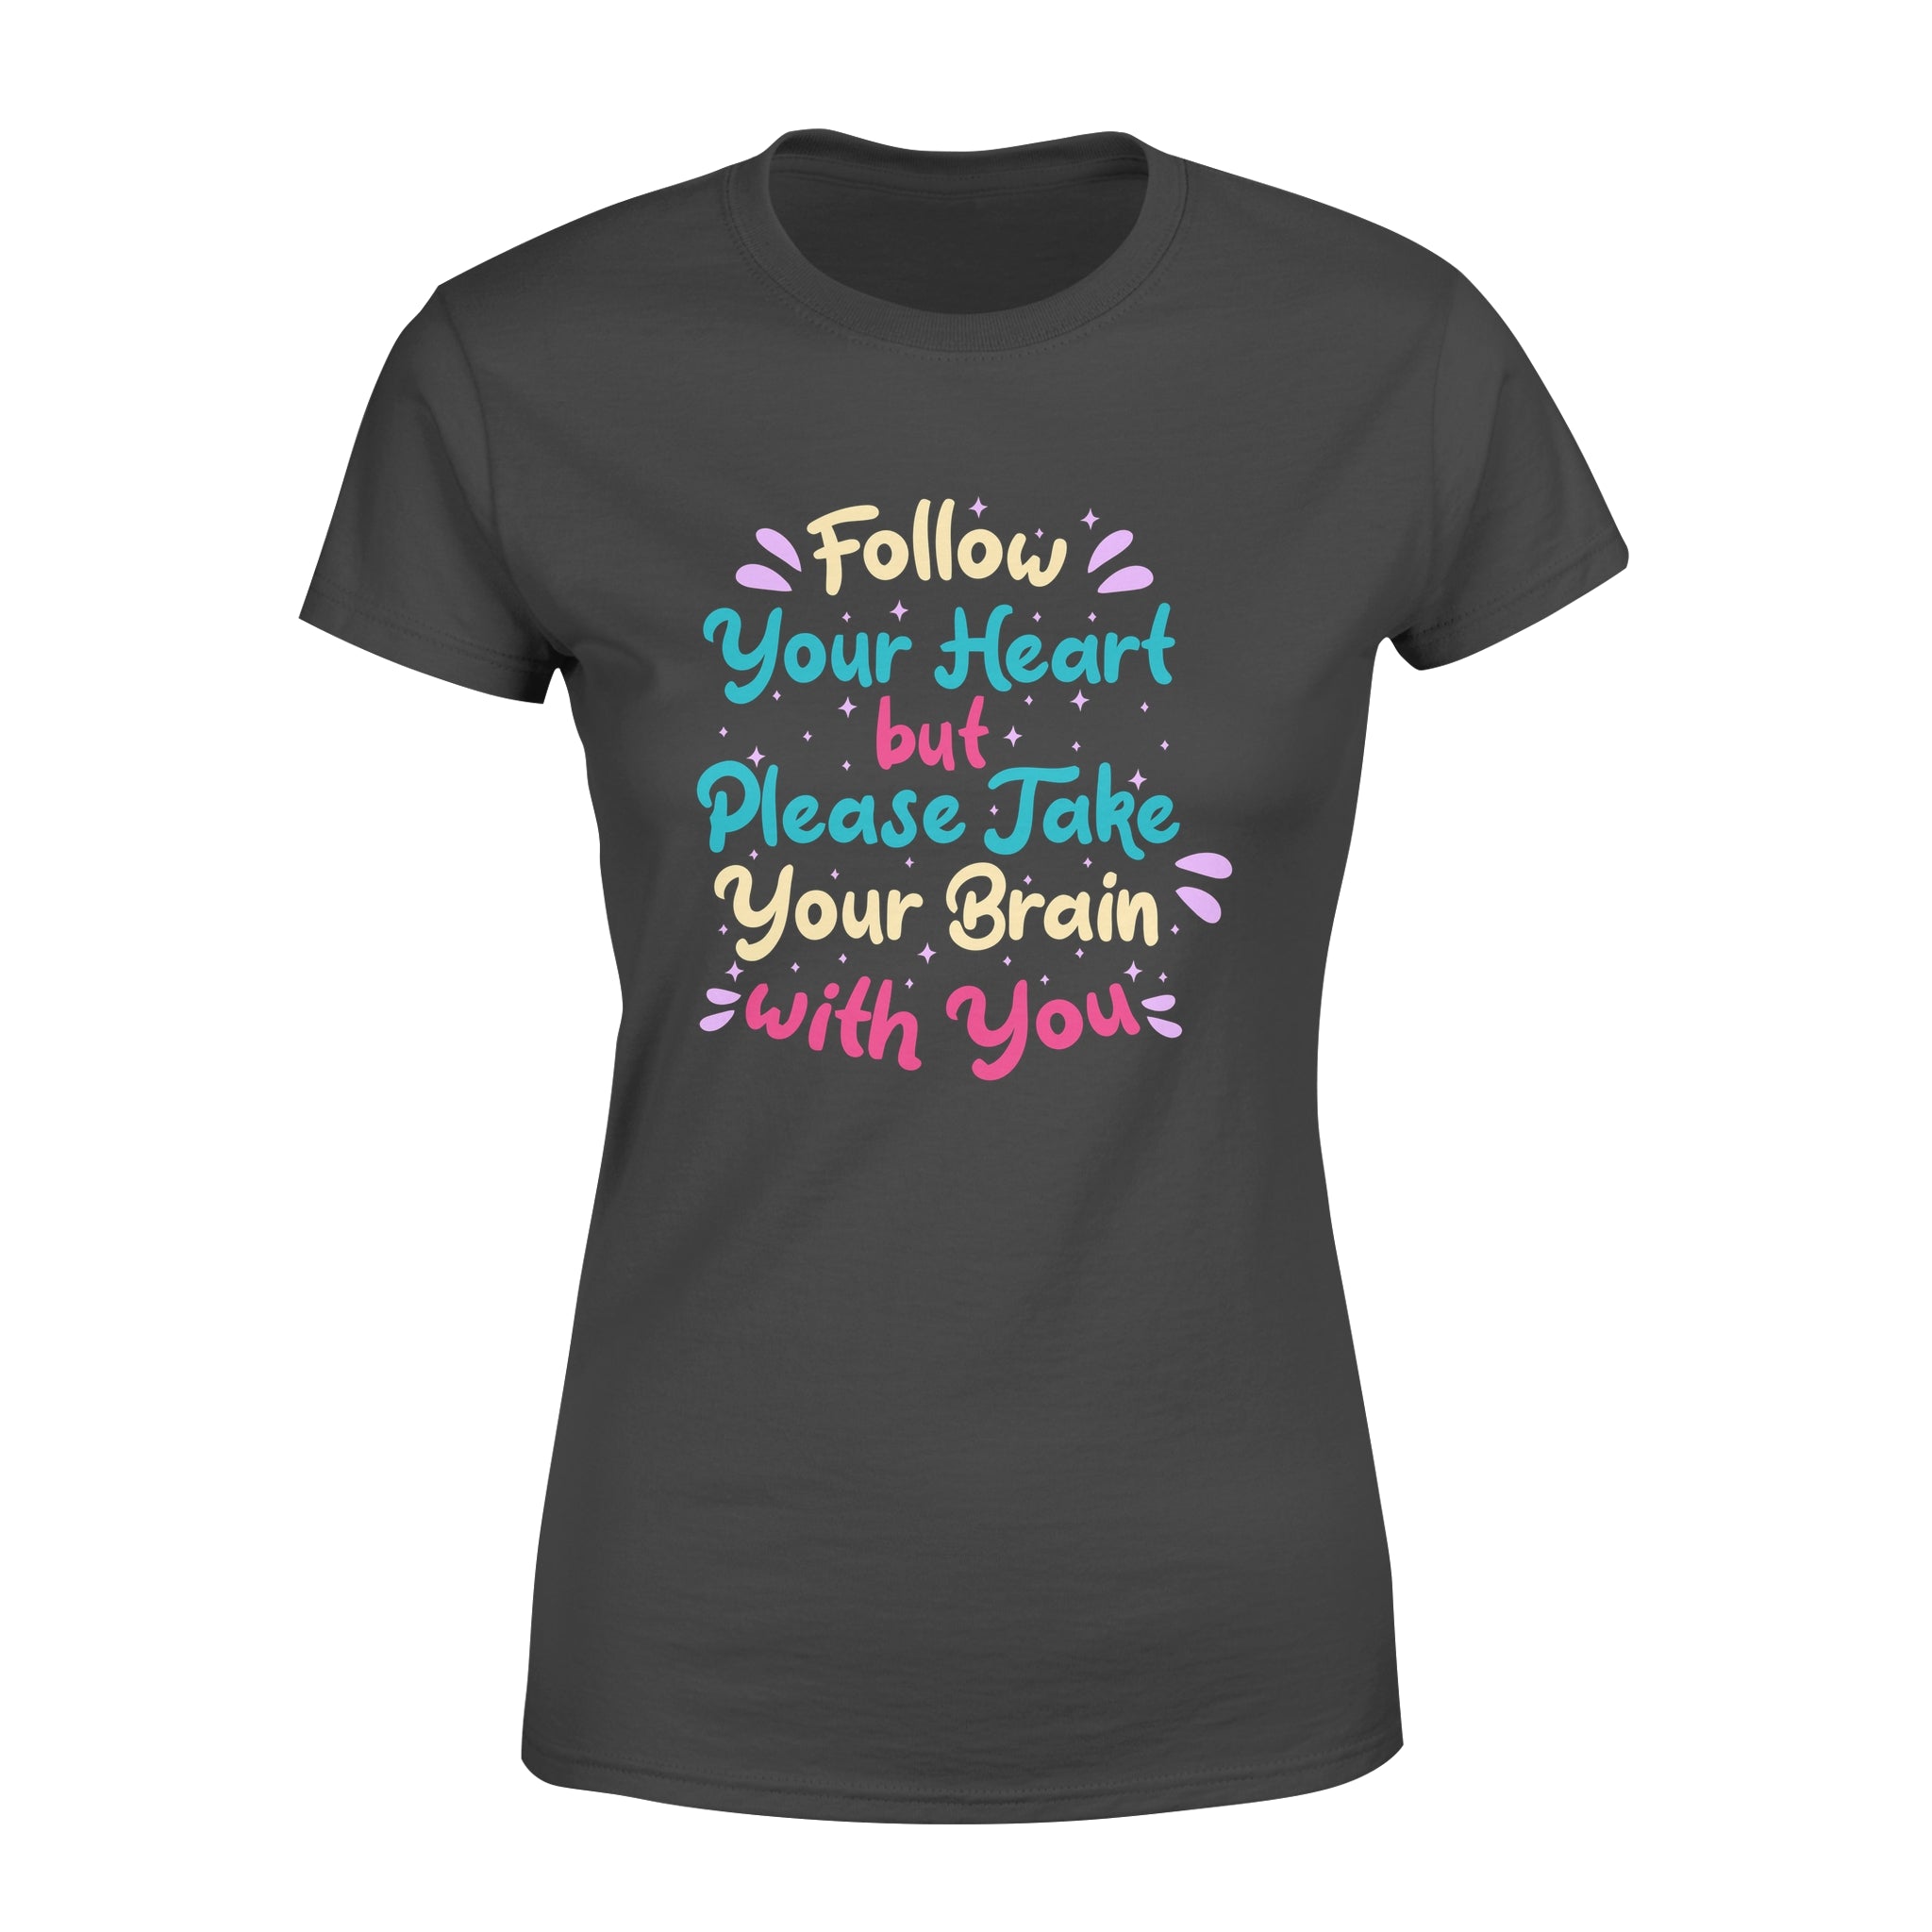 Follow You Heart but Please Take Your Brain with You - Women's T-shirt